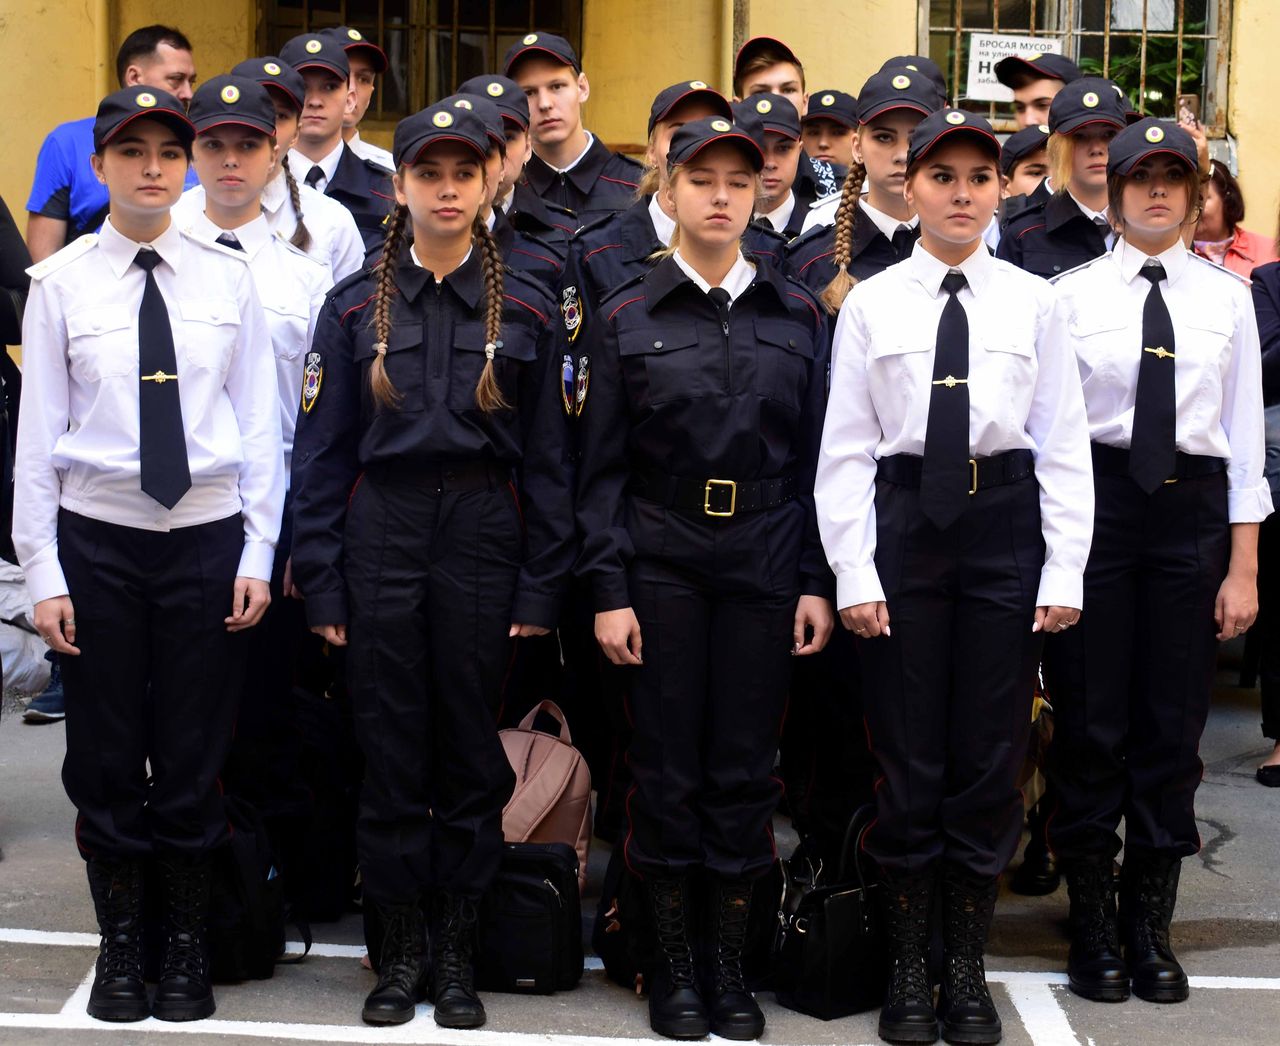 Сайт полицейского колледжа. Колледж полиции Москва курсантки. Полицейская форма в колледже. Форма колледжа полиции. Форма для Полиджа полиции.